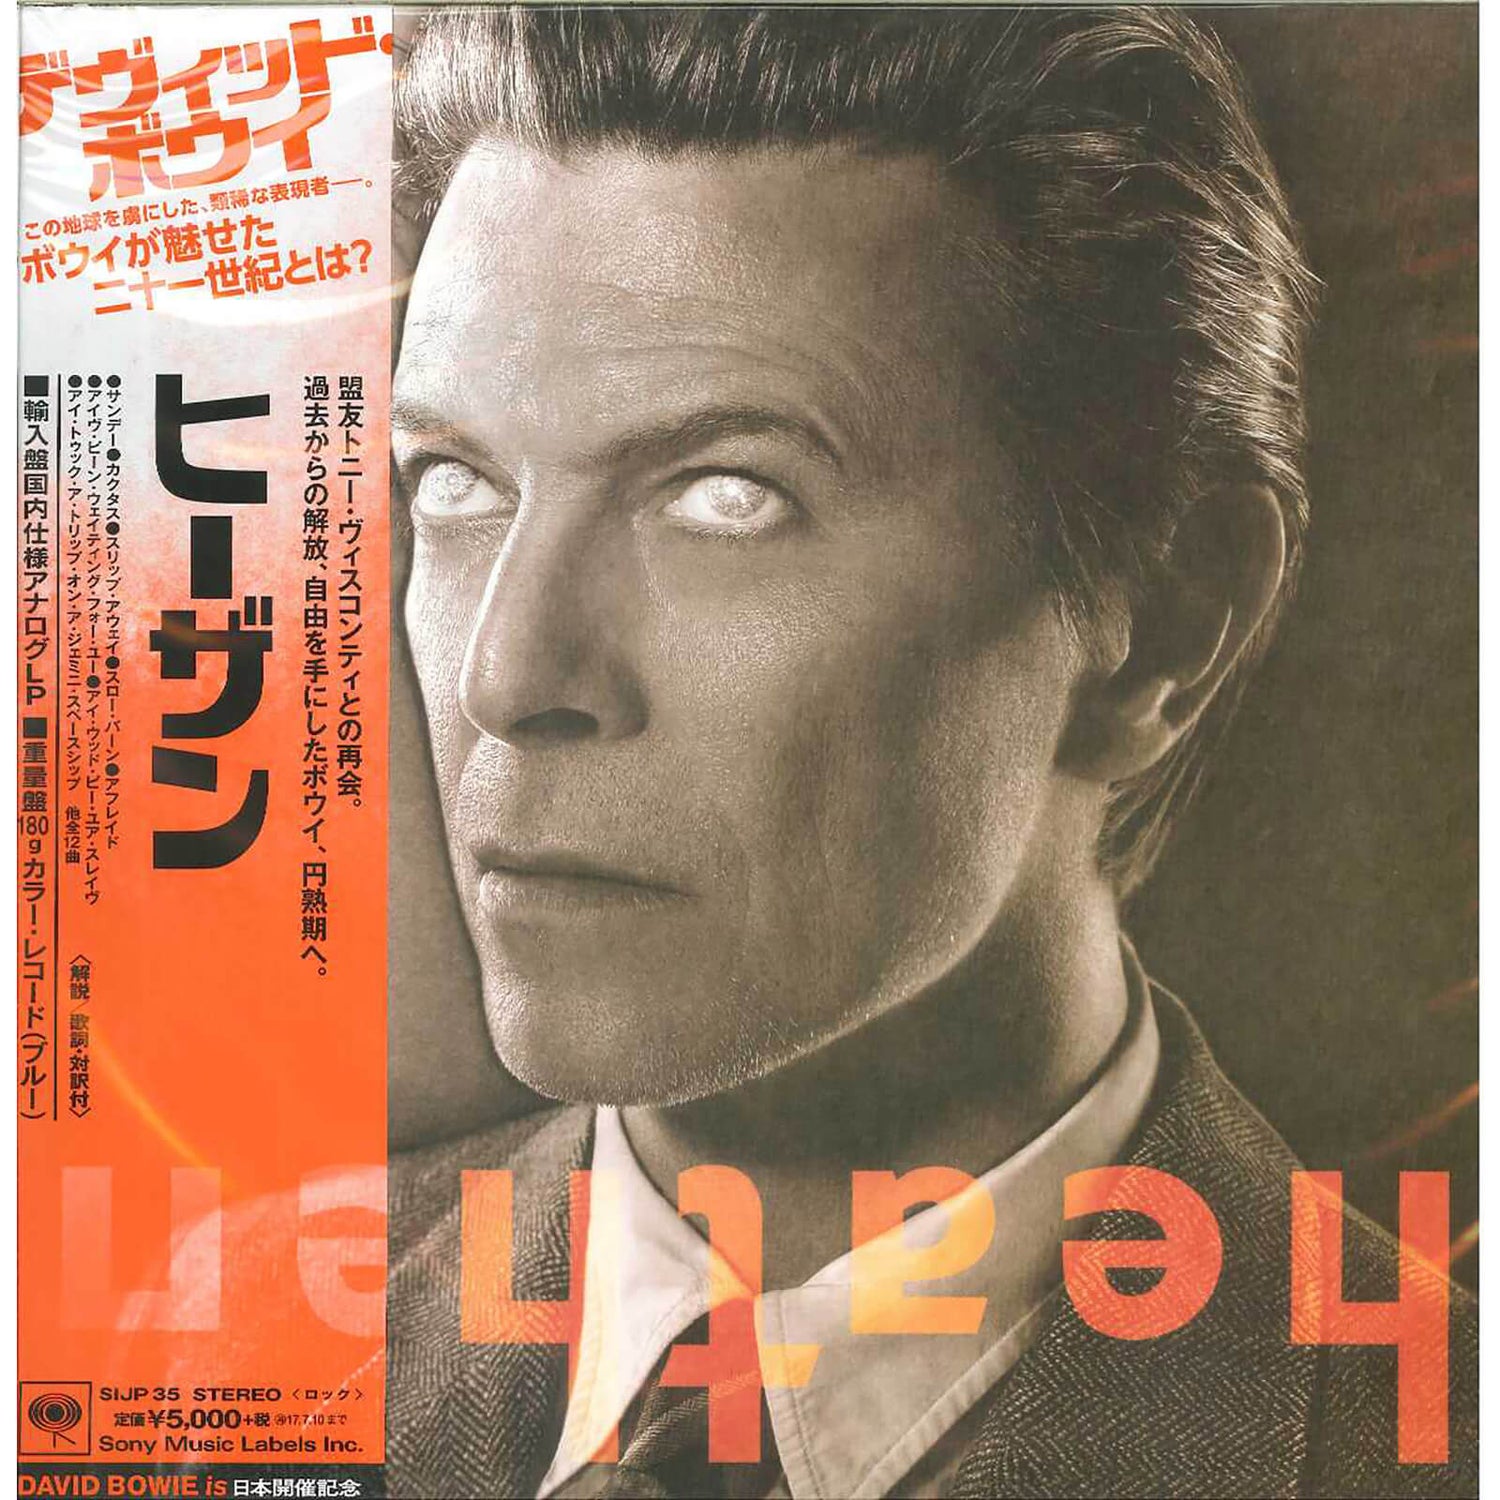 David Bowie - Heathen LP Japanische Ausgabe